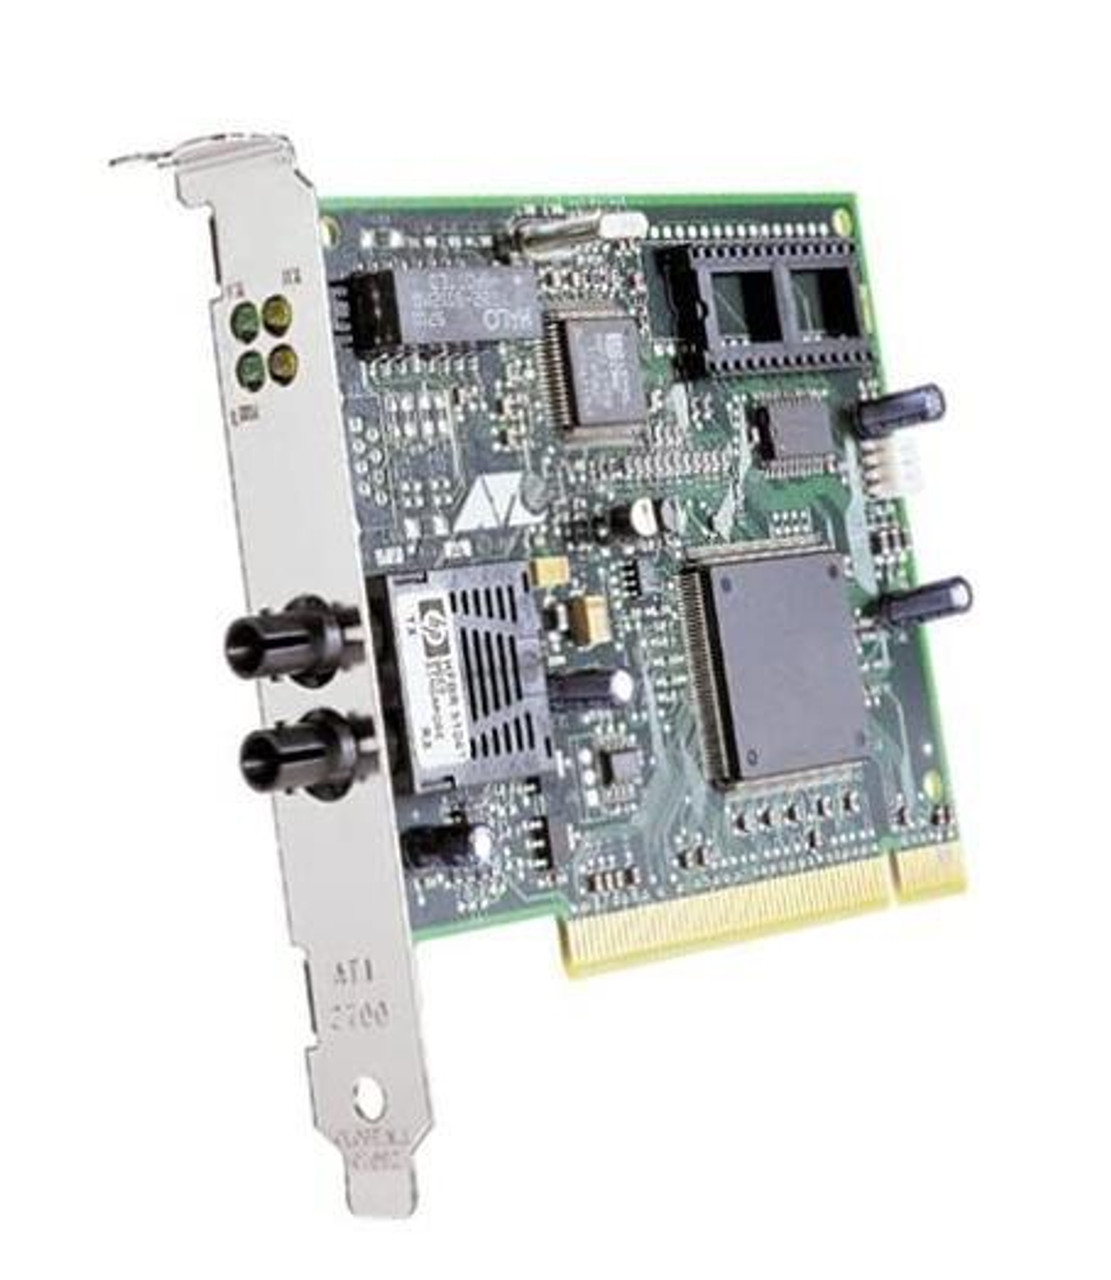 AT-2700TX-001 Allied Telesis AT-2700TX Network Adapter PCI 1 x RJ-45 10/100Base-TX